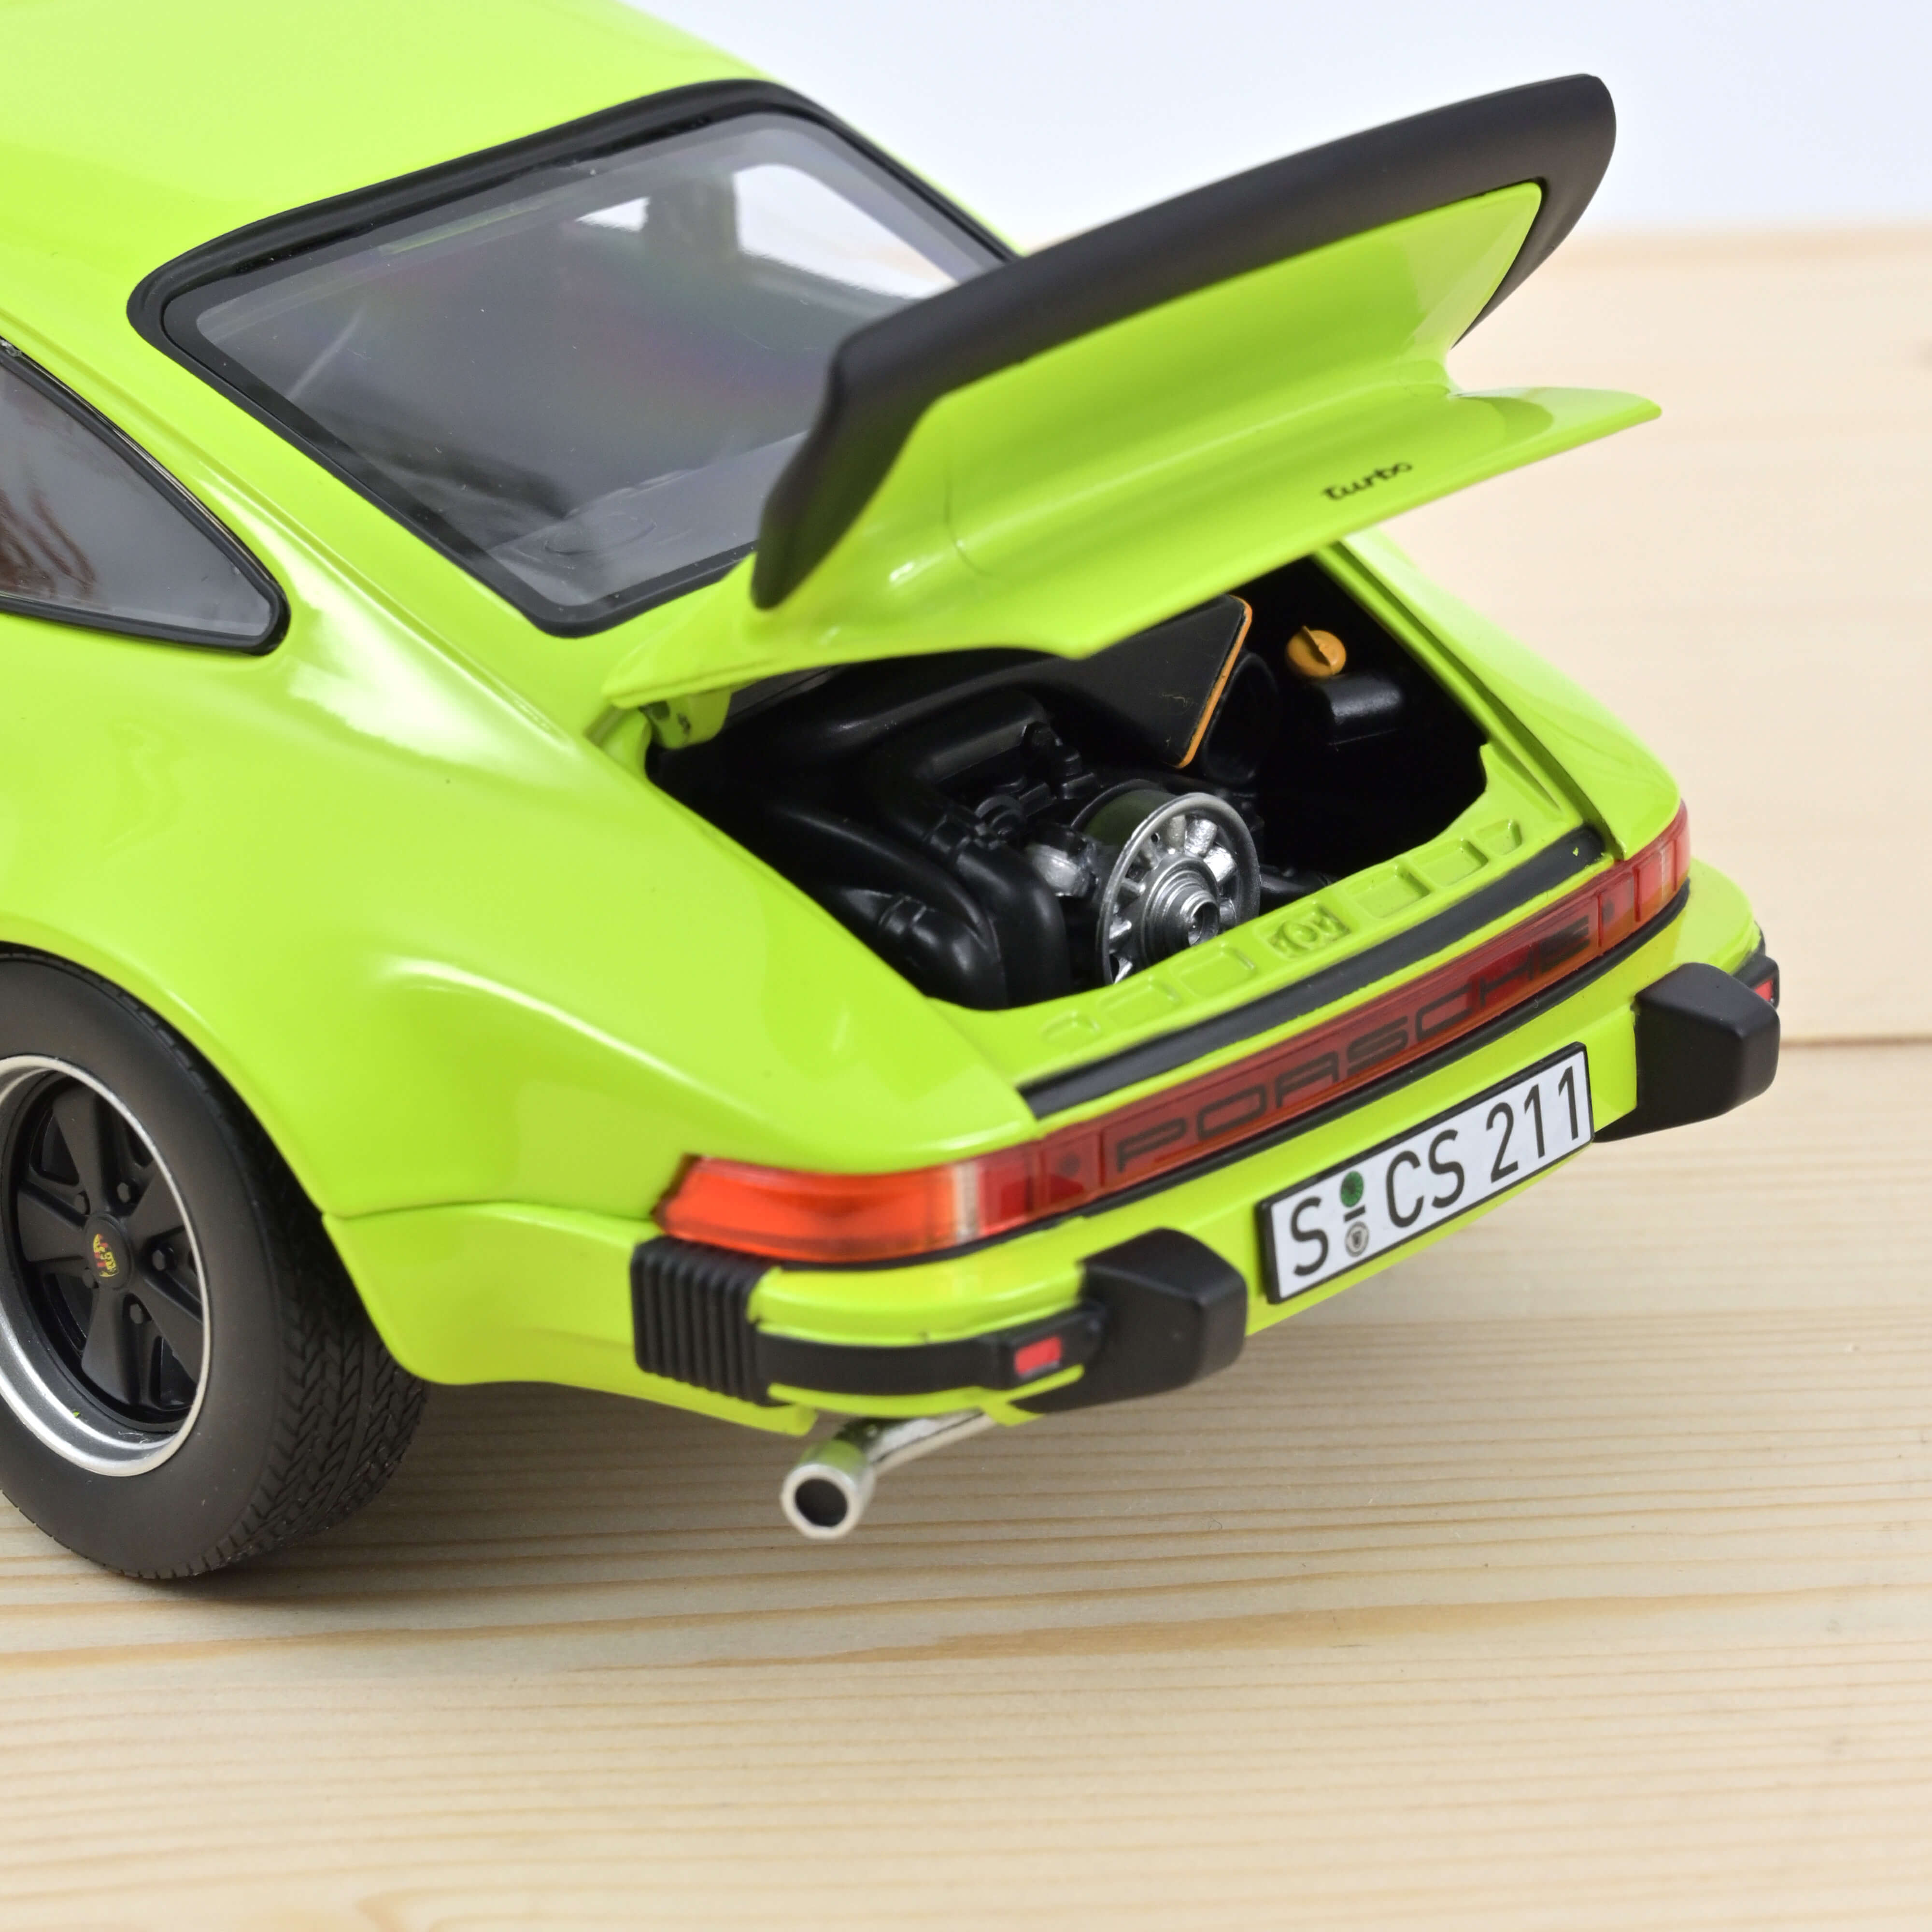 Porsche 911 Turbo 3.0 1976 - light green 1:18